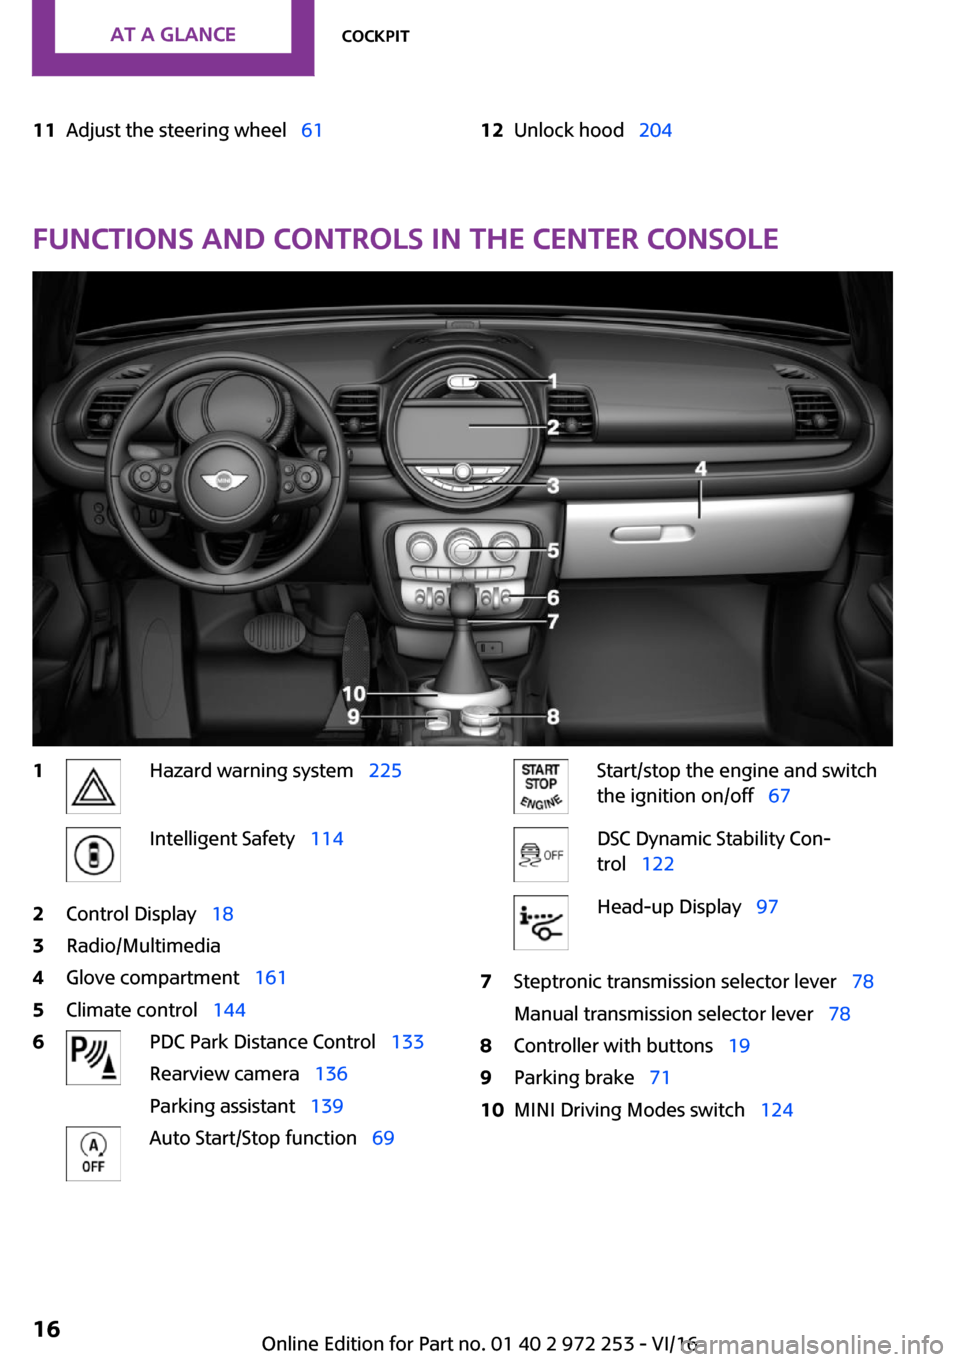 MINI Clubman 2016 User Guide �1�1�A�d�j�u�s�t� �t�h�e� �s�t�e�e�r�i�n�g� �w�h�e�e�lps�6�1�1�2�U�n�l�o�c�k� �h�o�o�dps�2�0�4
�F�u�n�c�t�i�o�n�s��a�n�d��c�o�n�t�r�o�l�s��i�n��t�h�e��c�e�n�t�e�r��c�o�n�s�o�l�e
�1�H�a�z�a�r